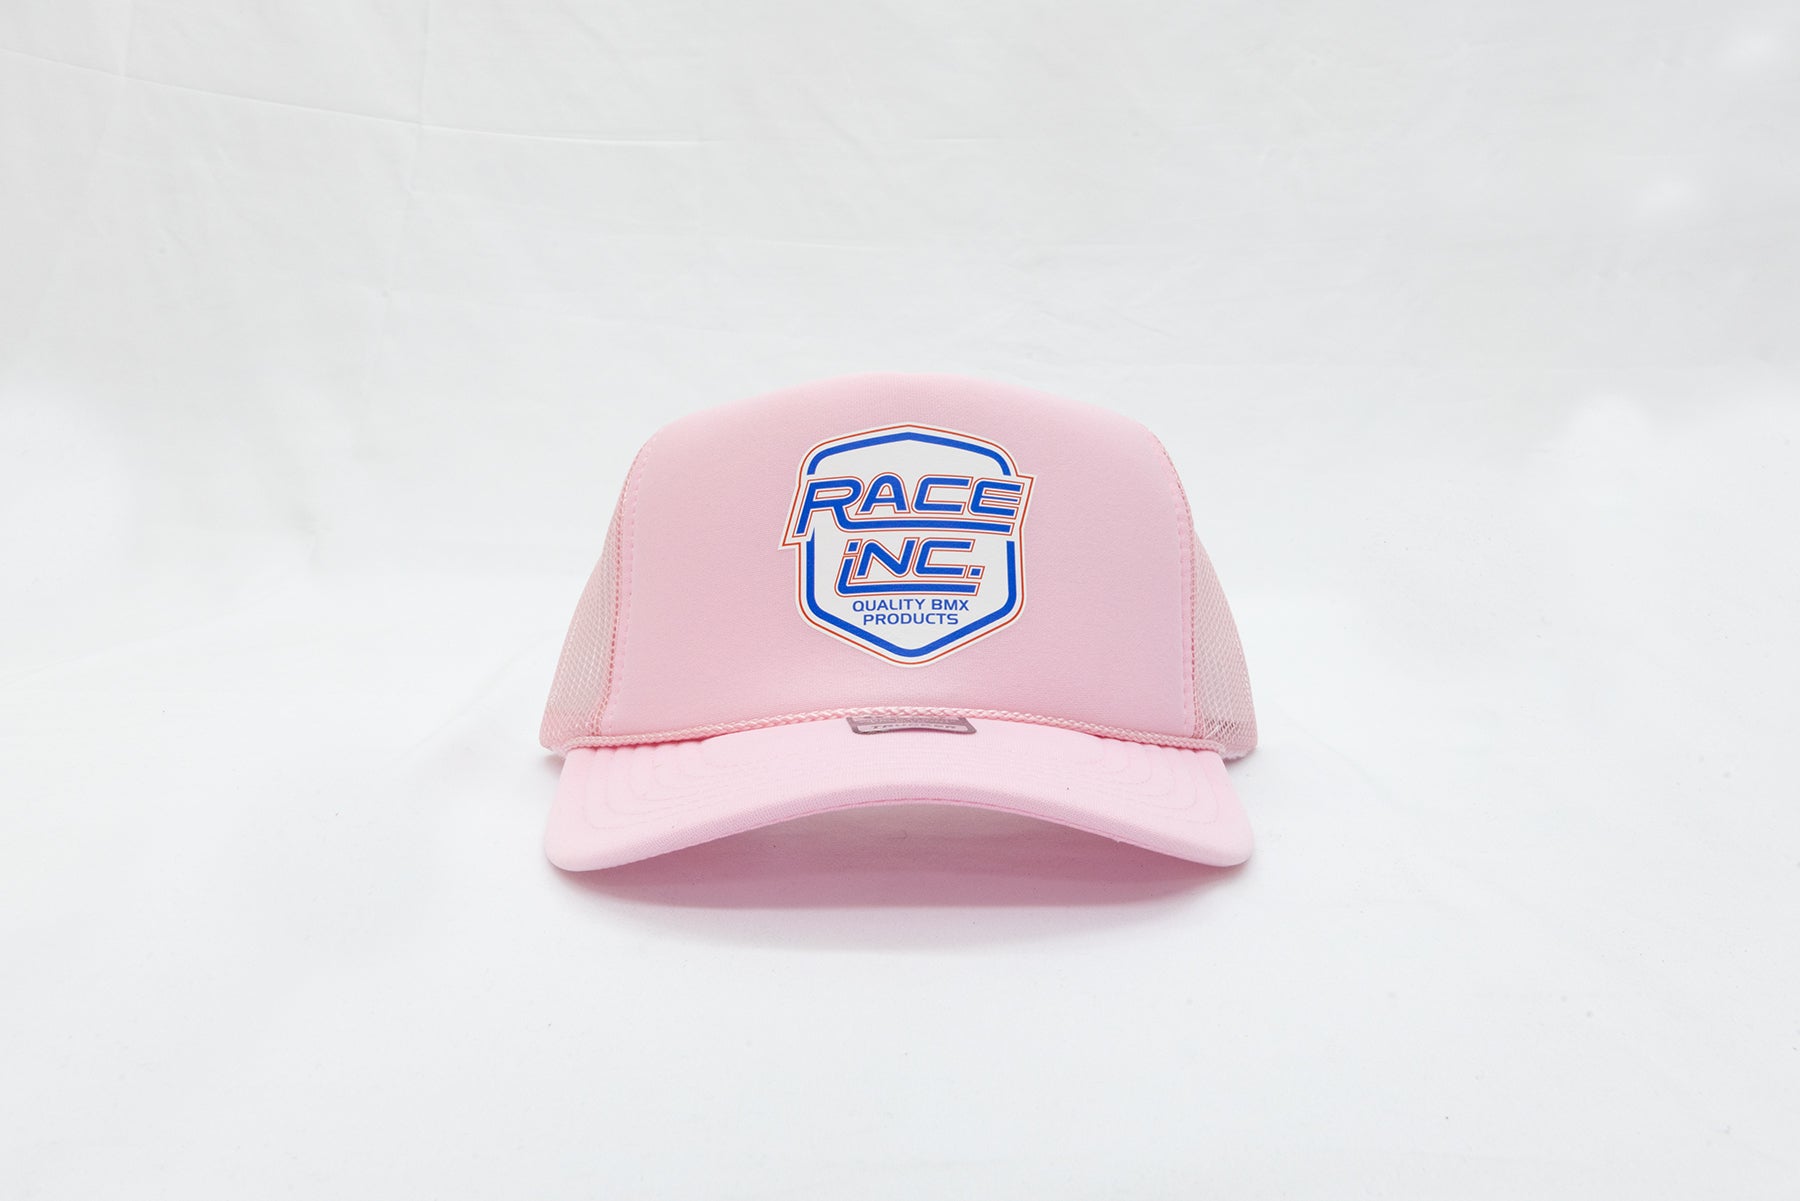 Race Inc. Trucker Hat Pink